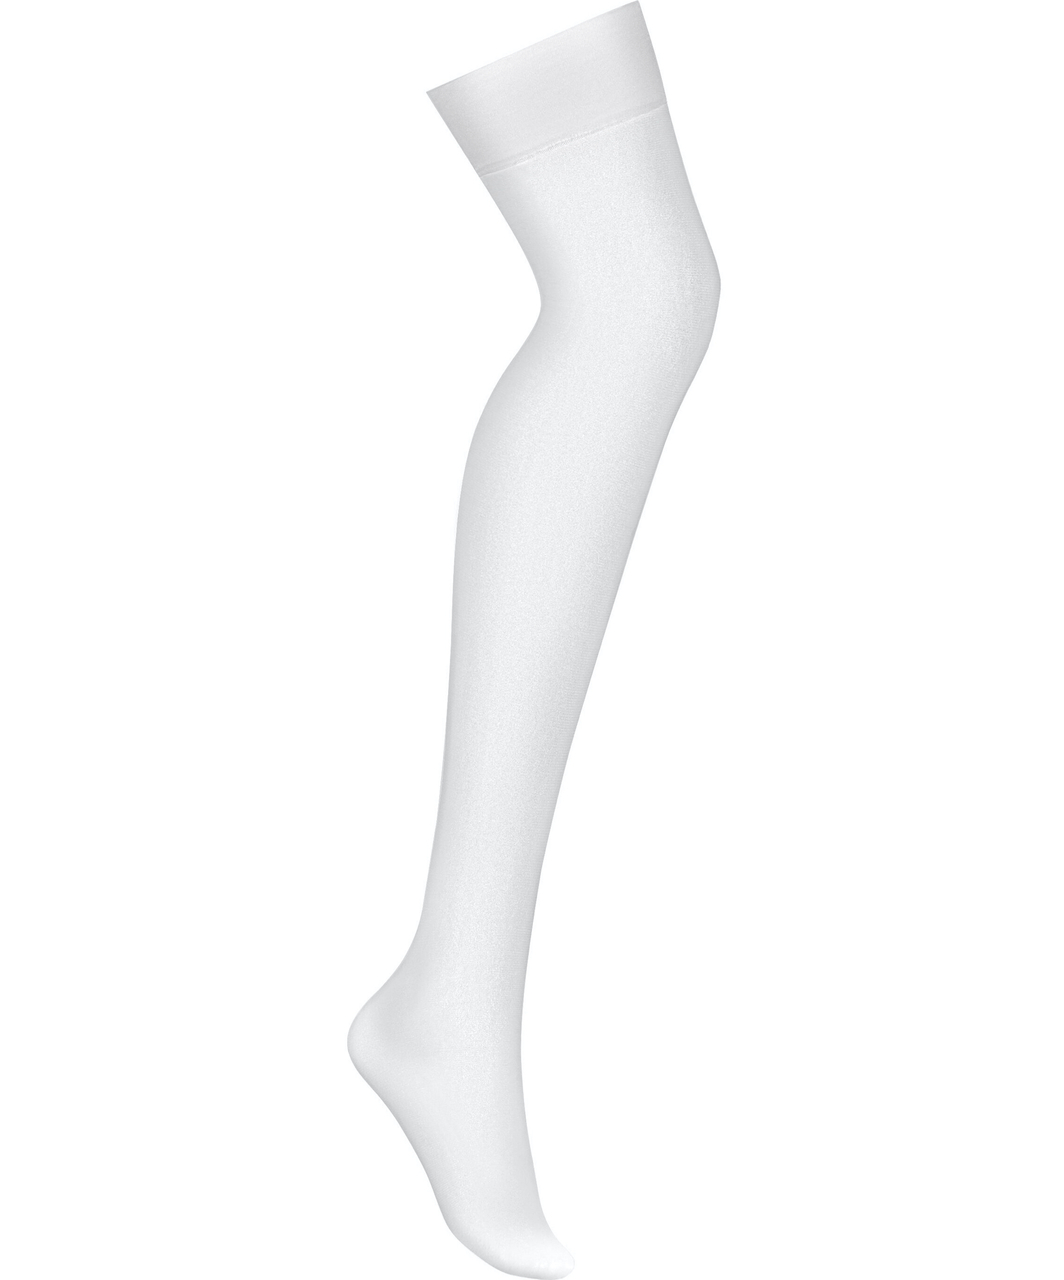 Obsessive white suspender stockings